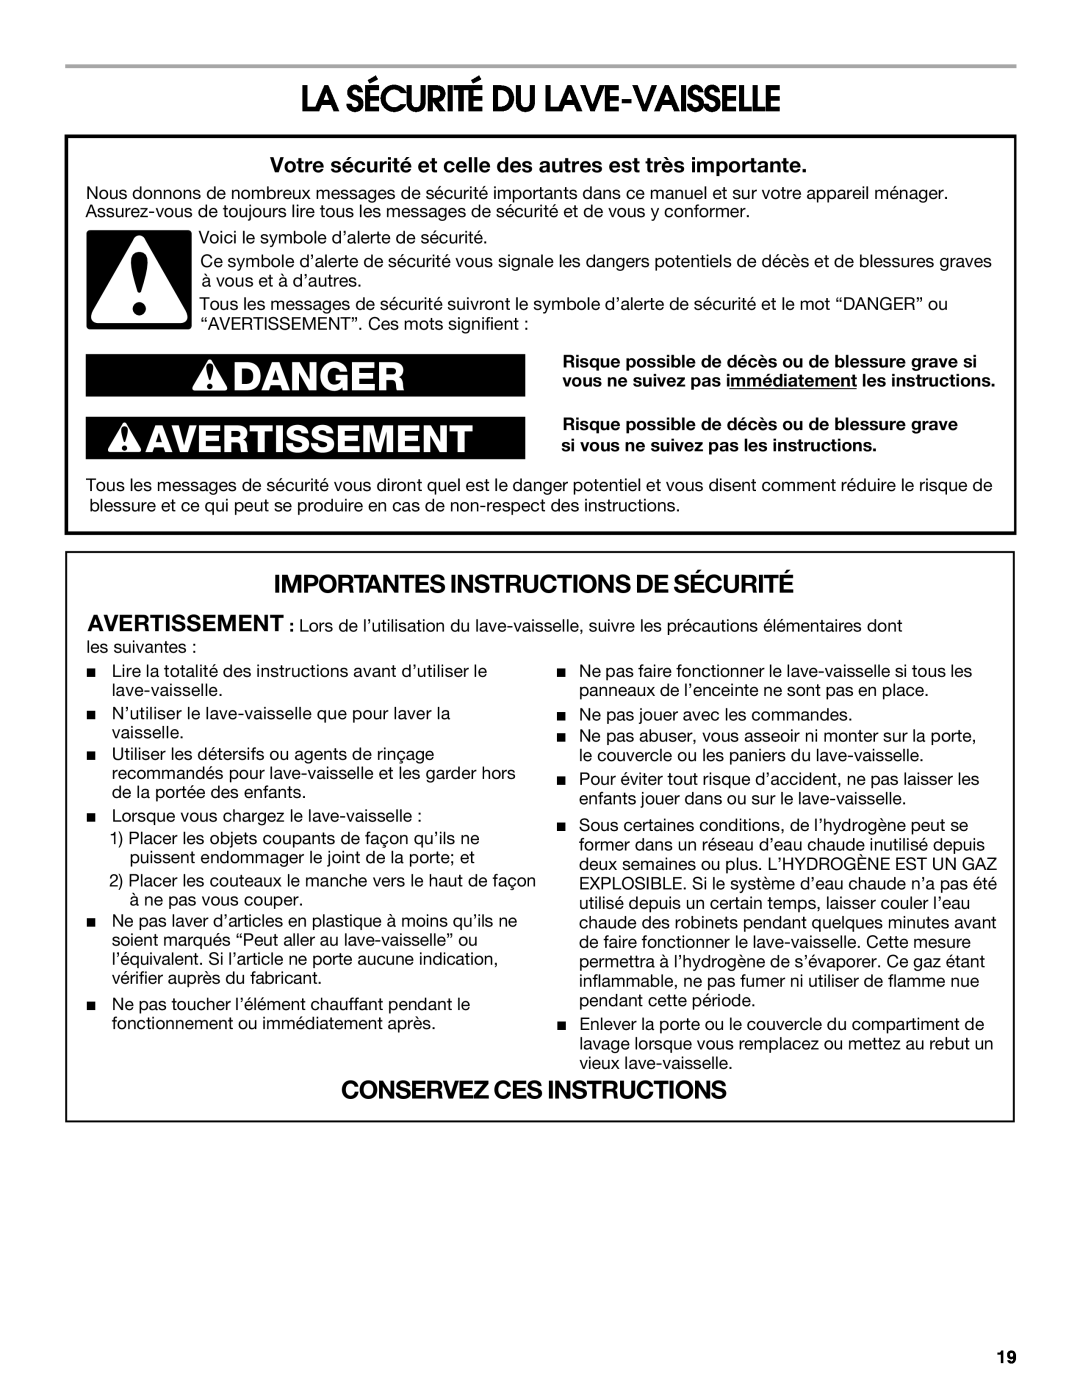 Whirlpool TUD6900 manual La Sécurité Du Lave-Vaisselle, Votre sécurité et celle des autres est très importante, Danger 